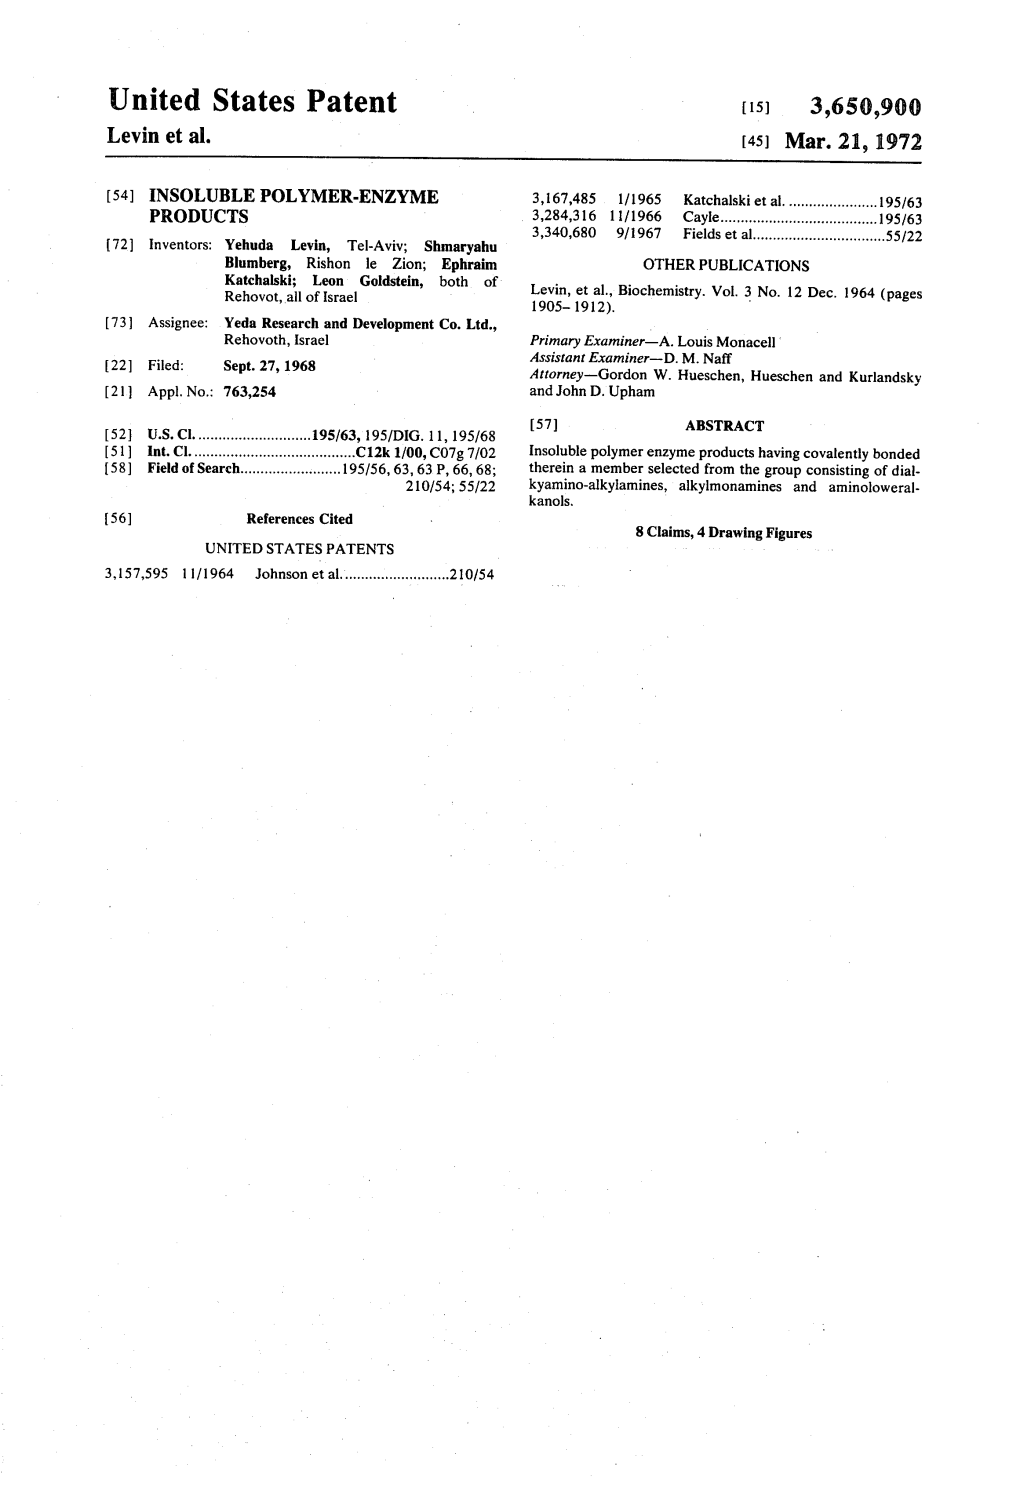 United States Patent (15) 3,650,900 Levin Et Al